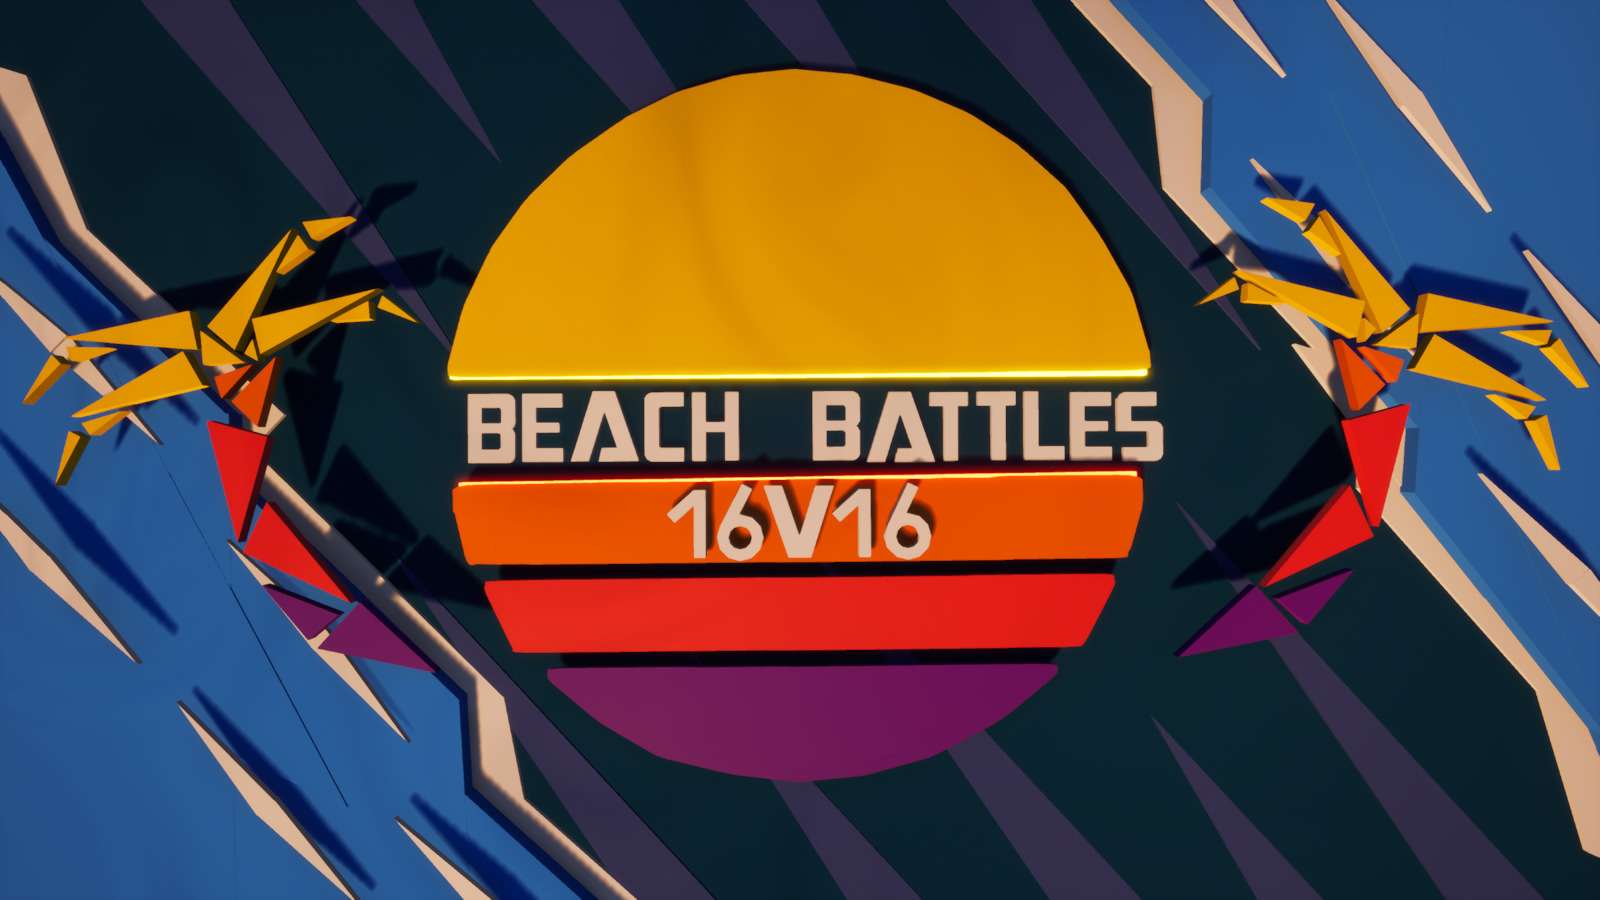 BEACH BATTLES! (16V16) image 2